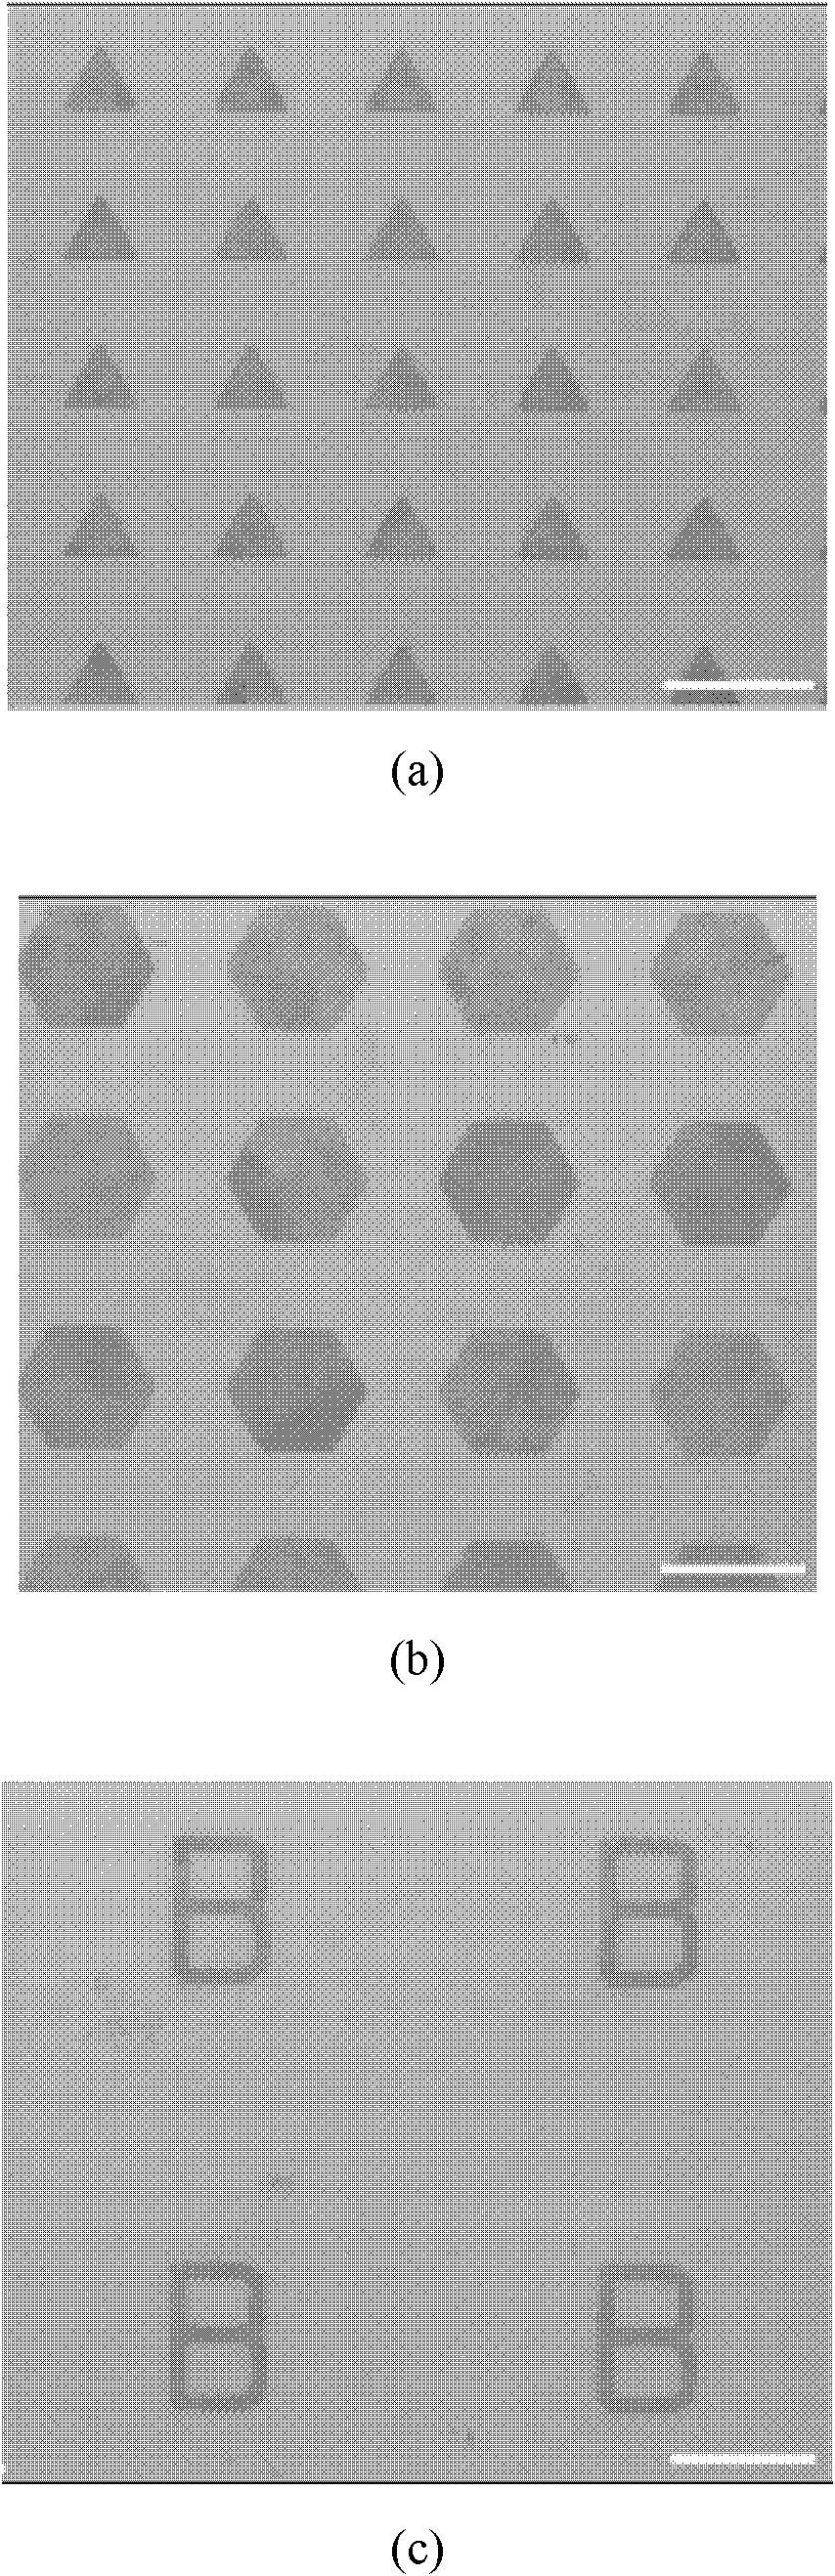 Method for preparing patterned graphene